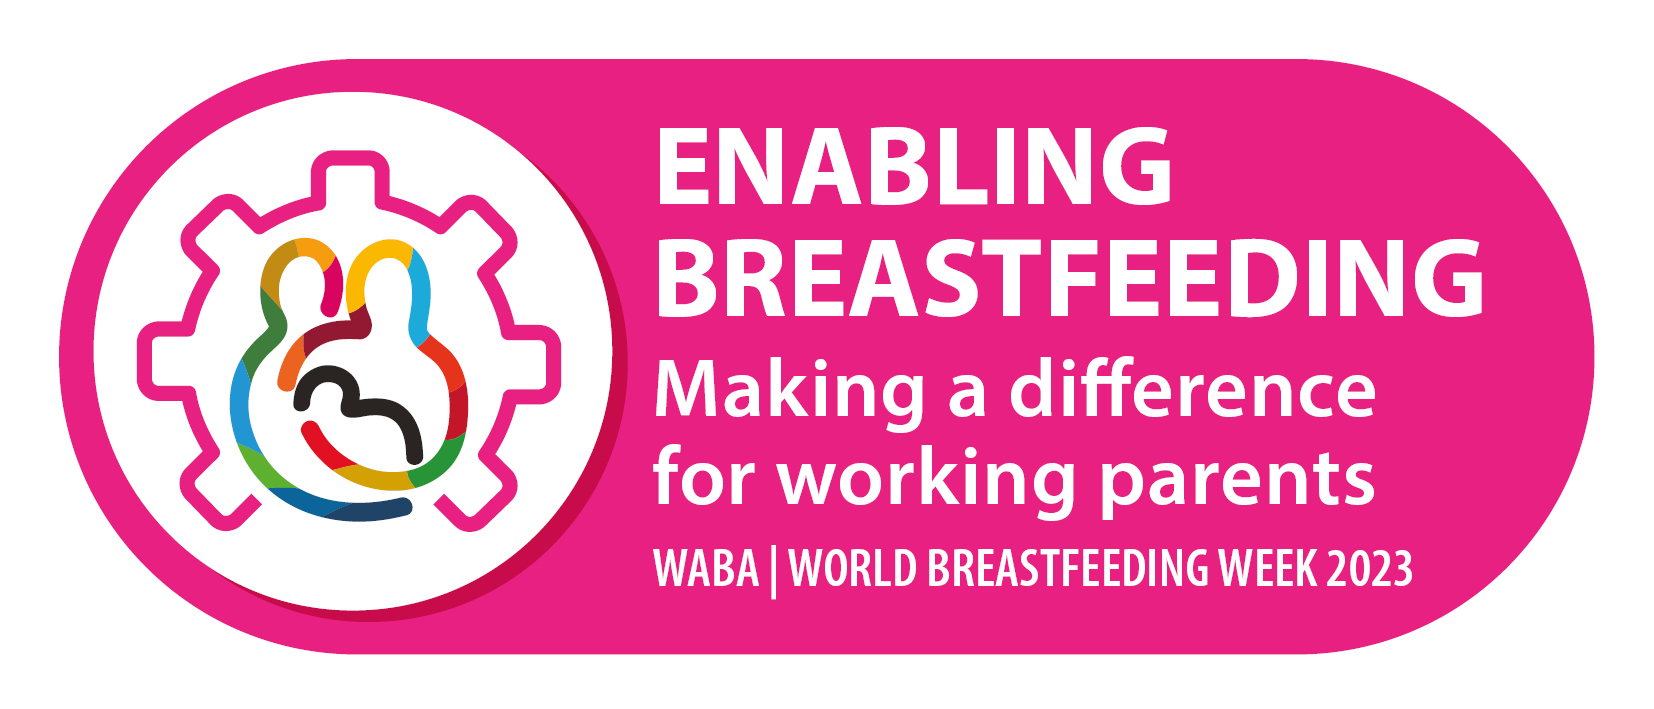 SMMC celebrates World Breastfeeding Week 2023